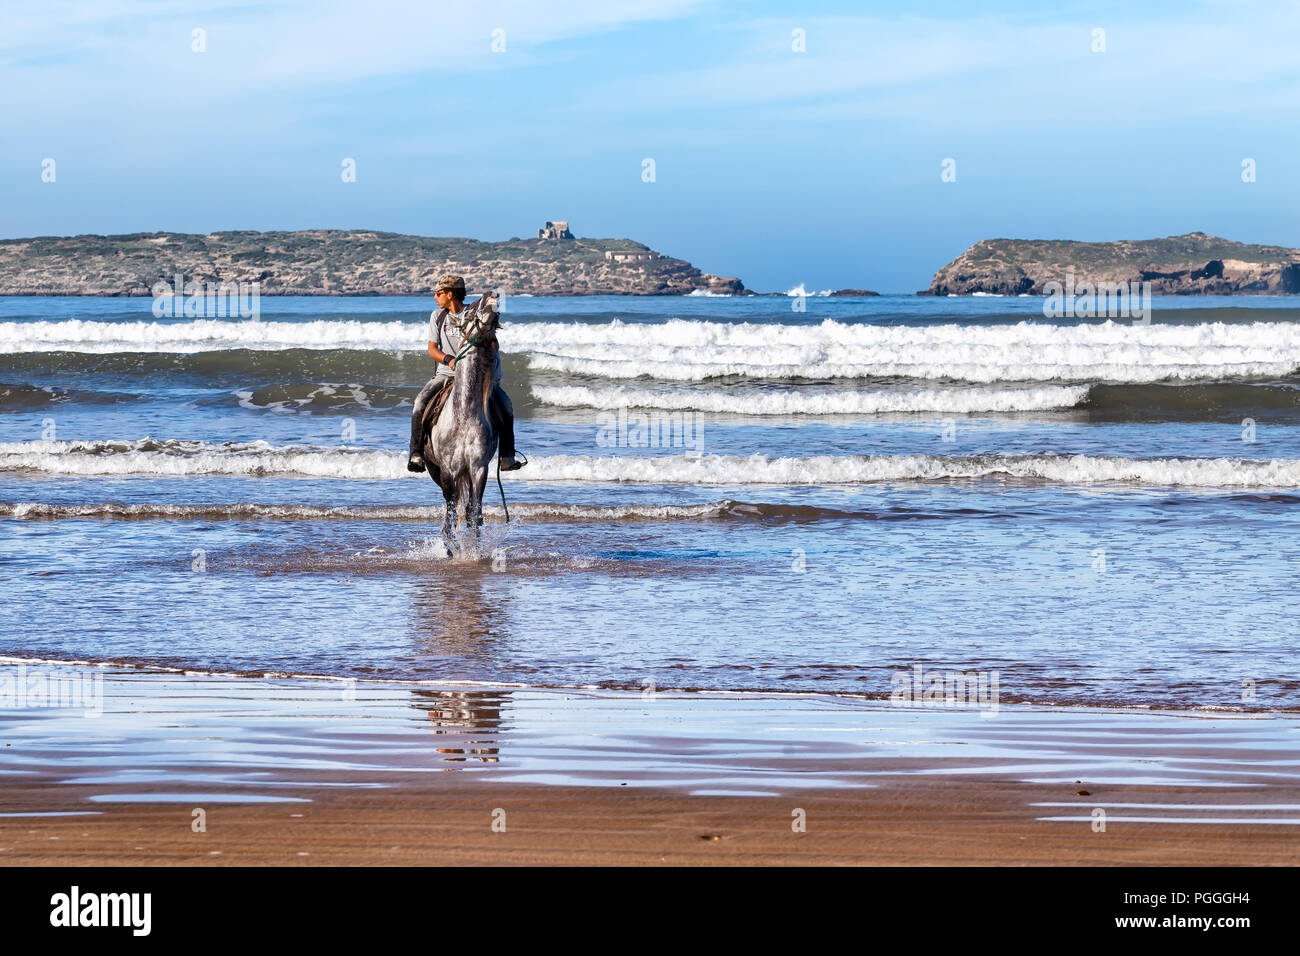 ESSAOUIRA, MAROKKO - Dec 22, 2012: der Mann, der ein Pferd Reiten in den Wellen des Ozeans in Essaouira, Marokko. Reiten ist eine beliebte Aktivität am Strand, bot Stockfoto